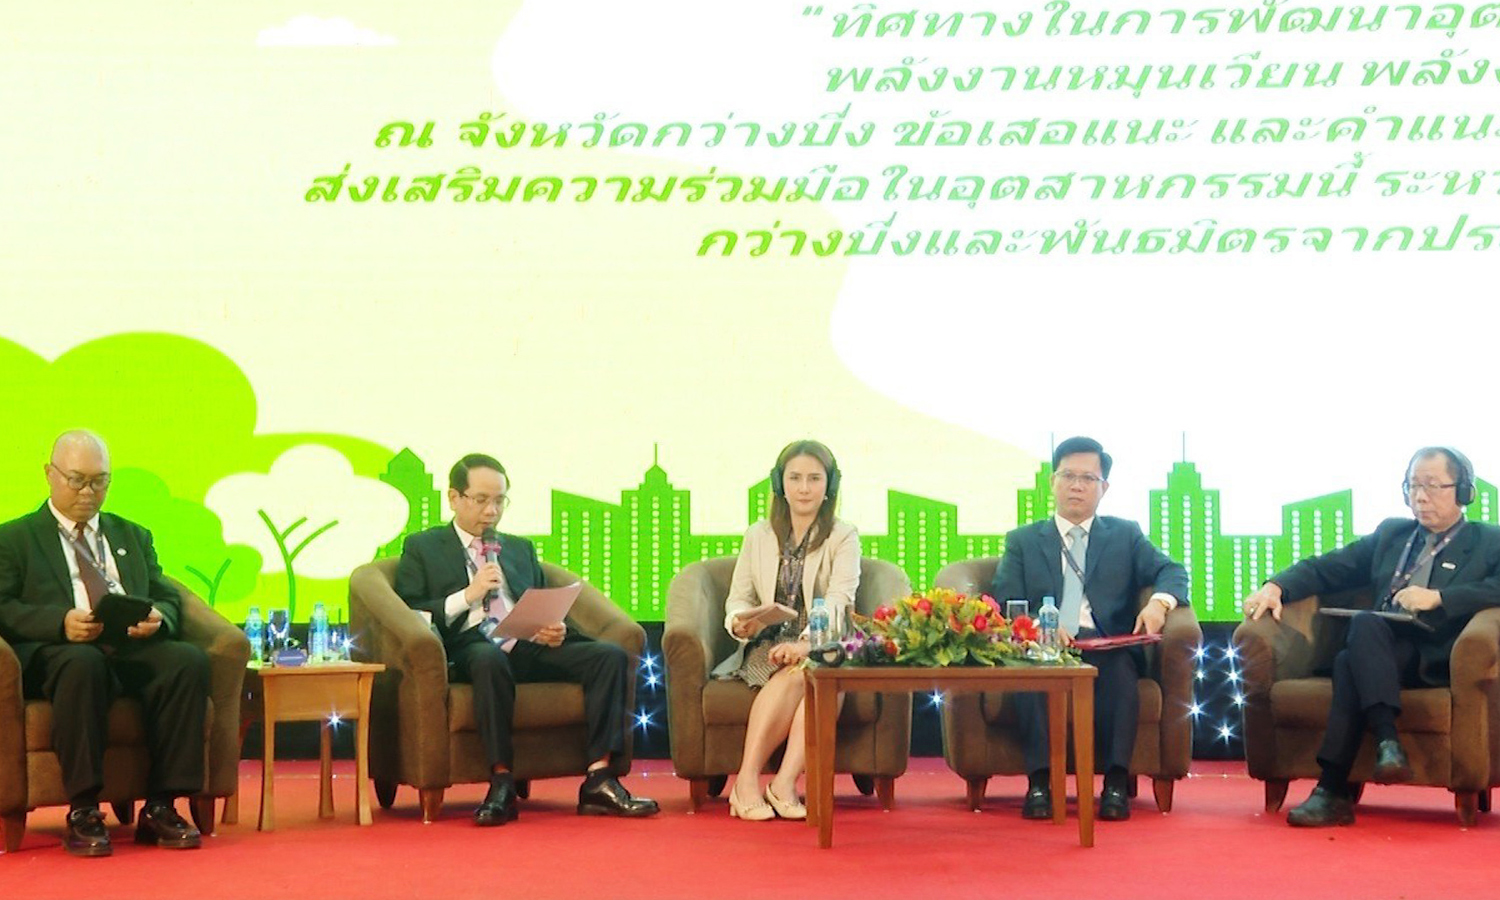 Hội nghị "Gặp gỡ Thái Lan" tại tỉnh Quảng Trị